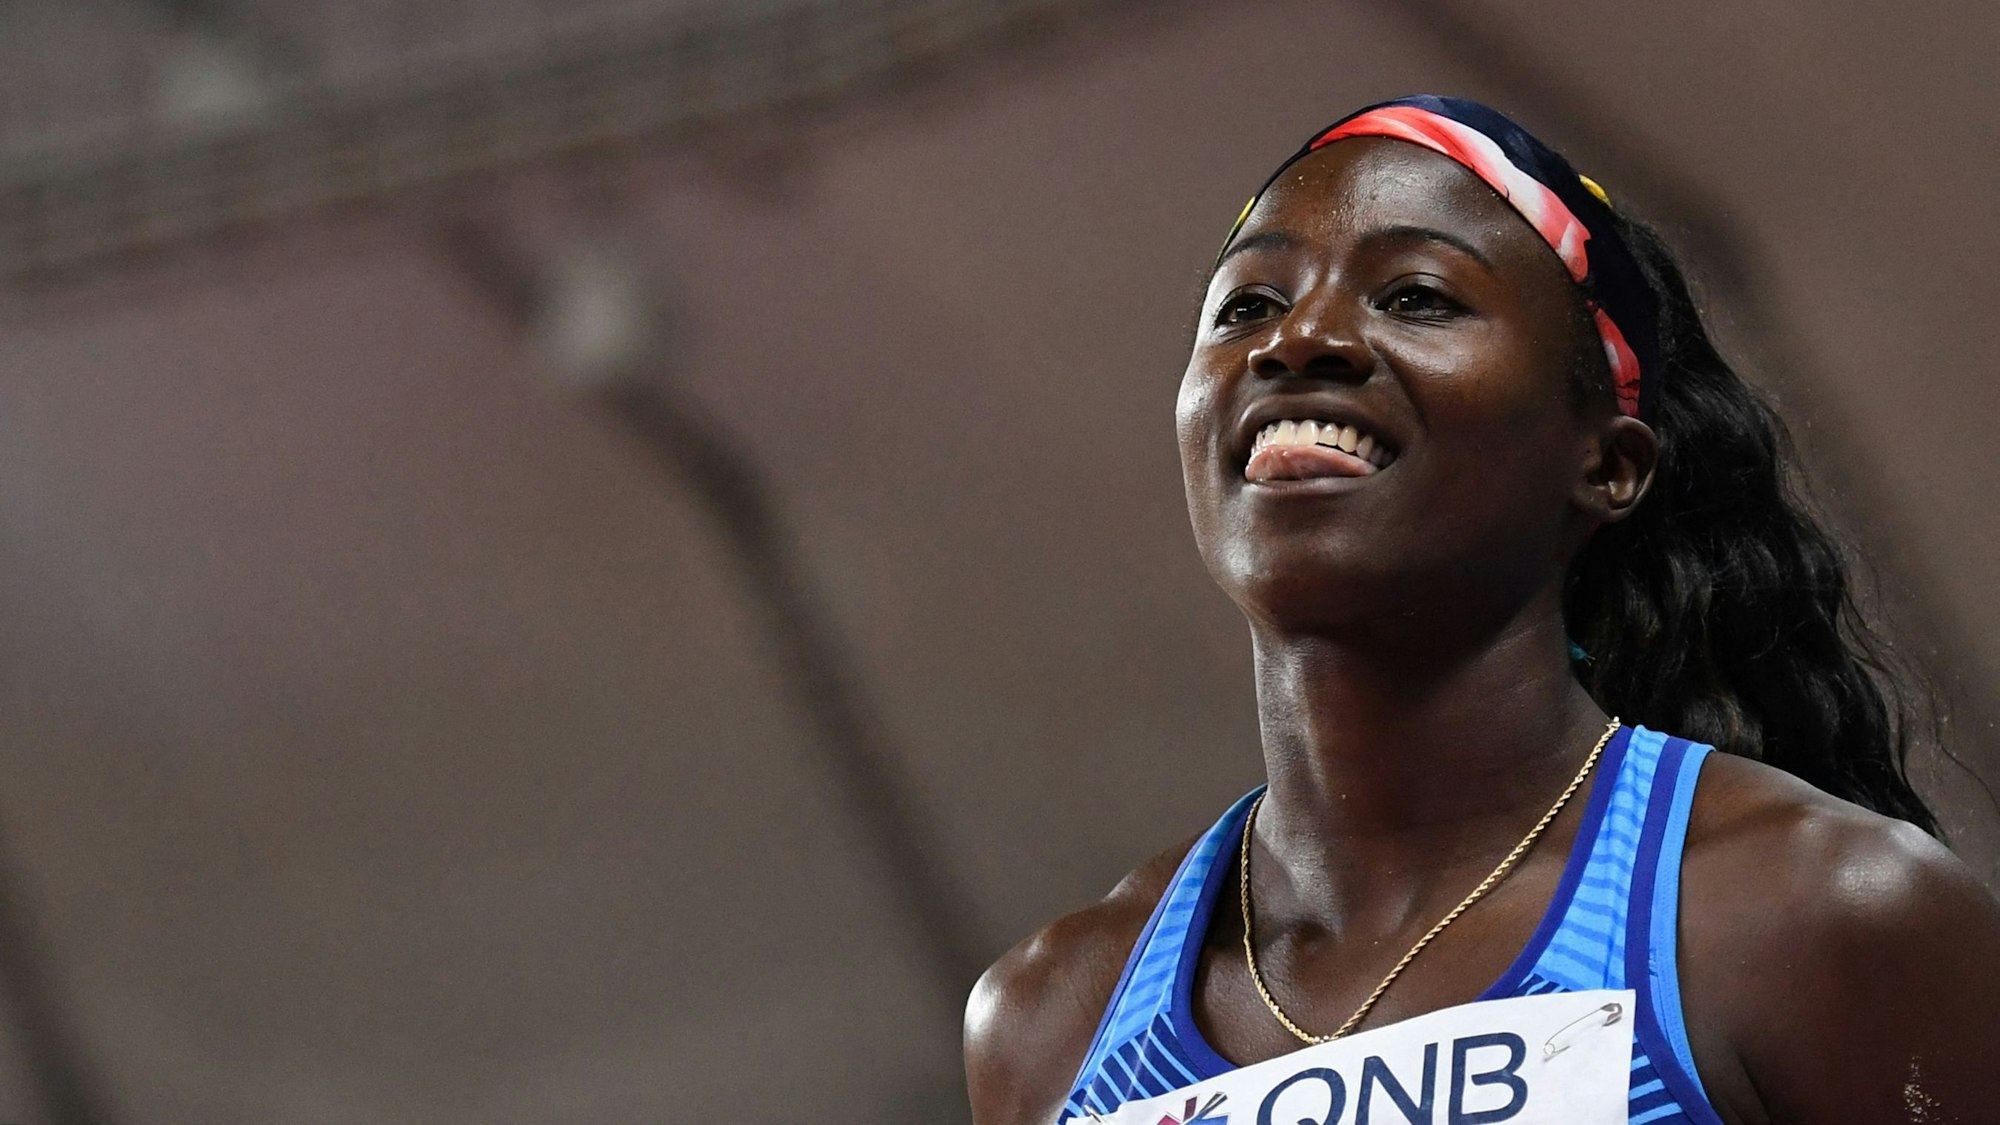 Sprinterin Tori Bowie mit guter Laune bei der Leichtathletik-WM 2019 in Doha.